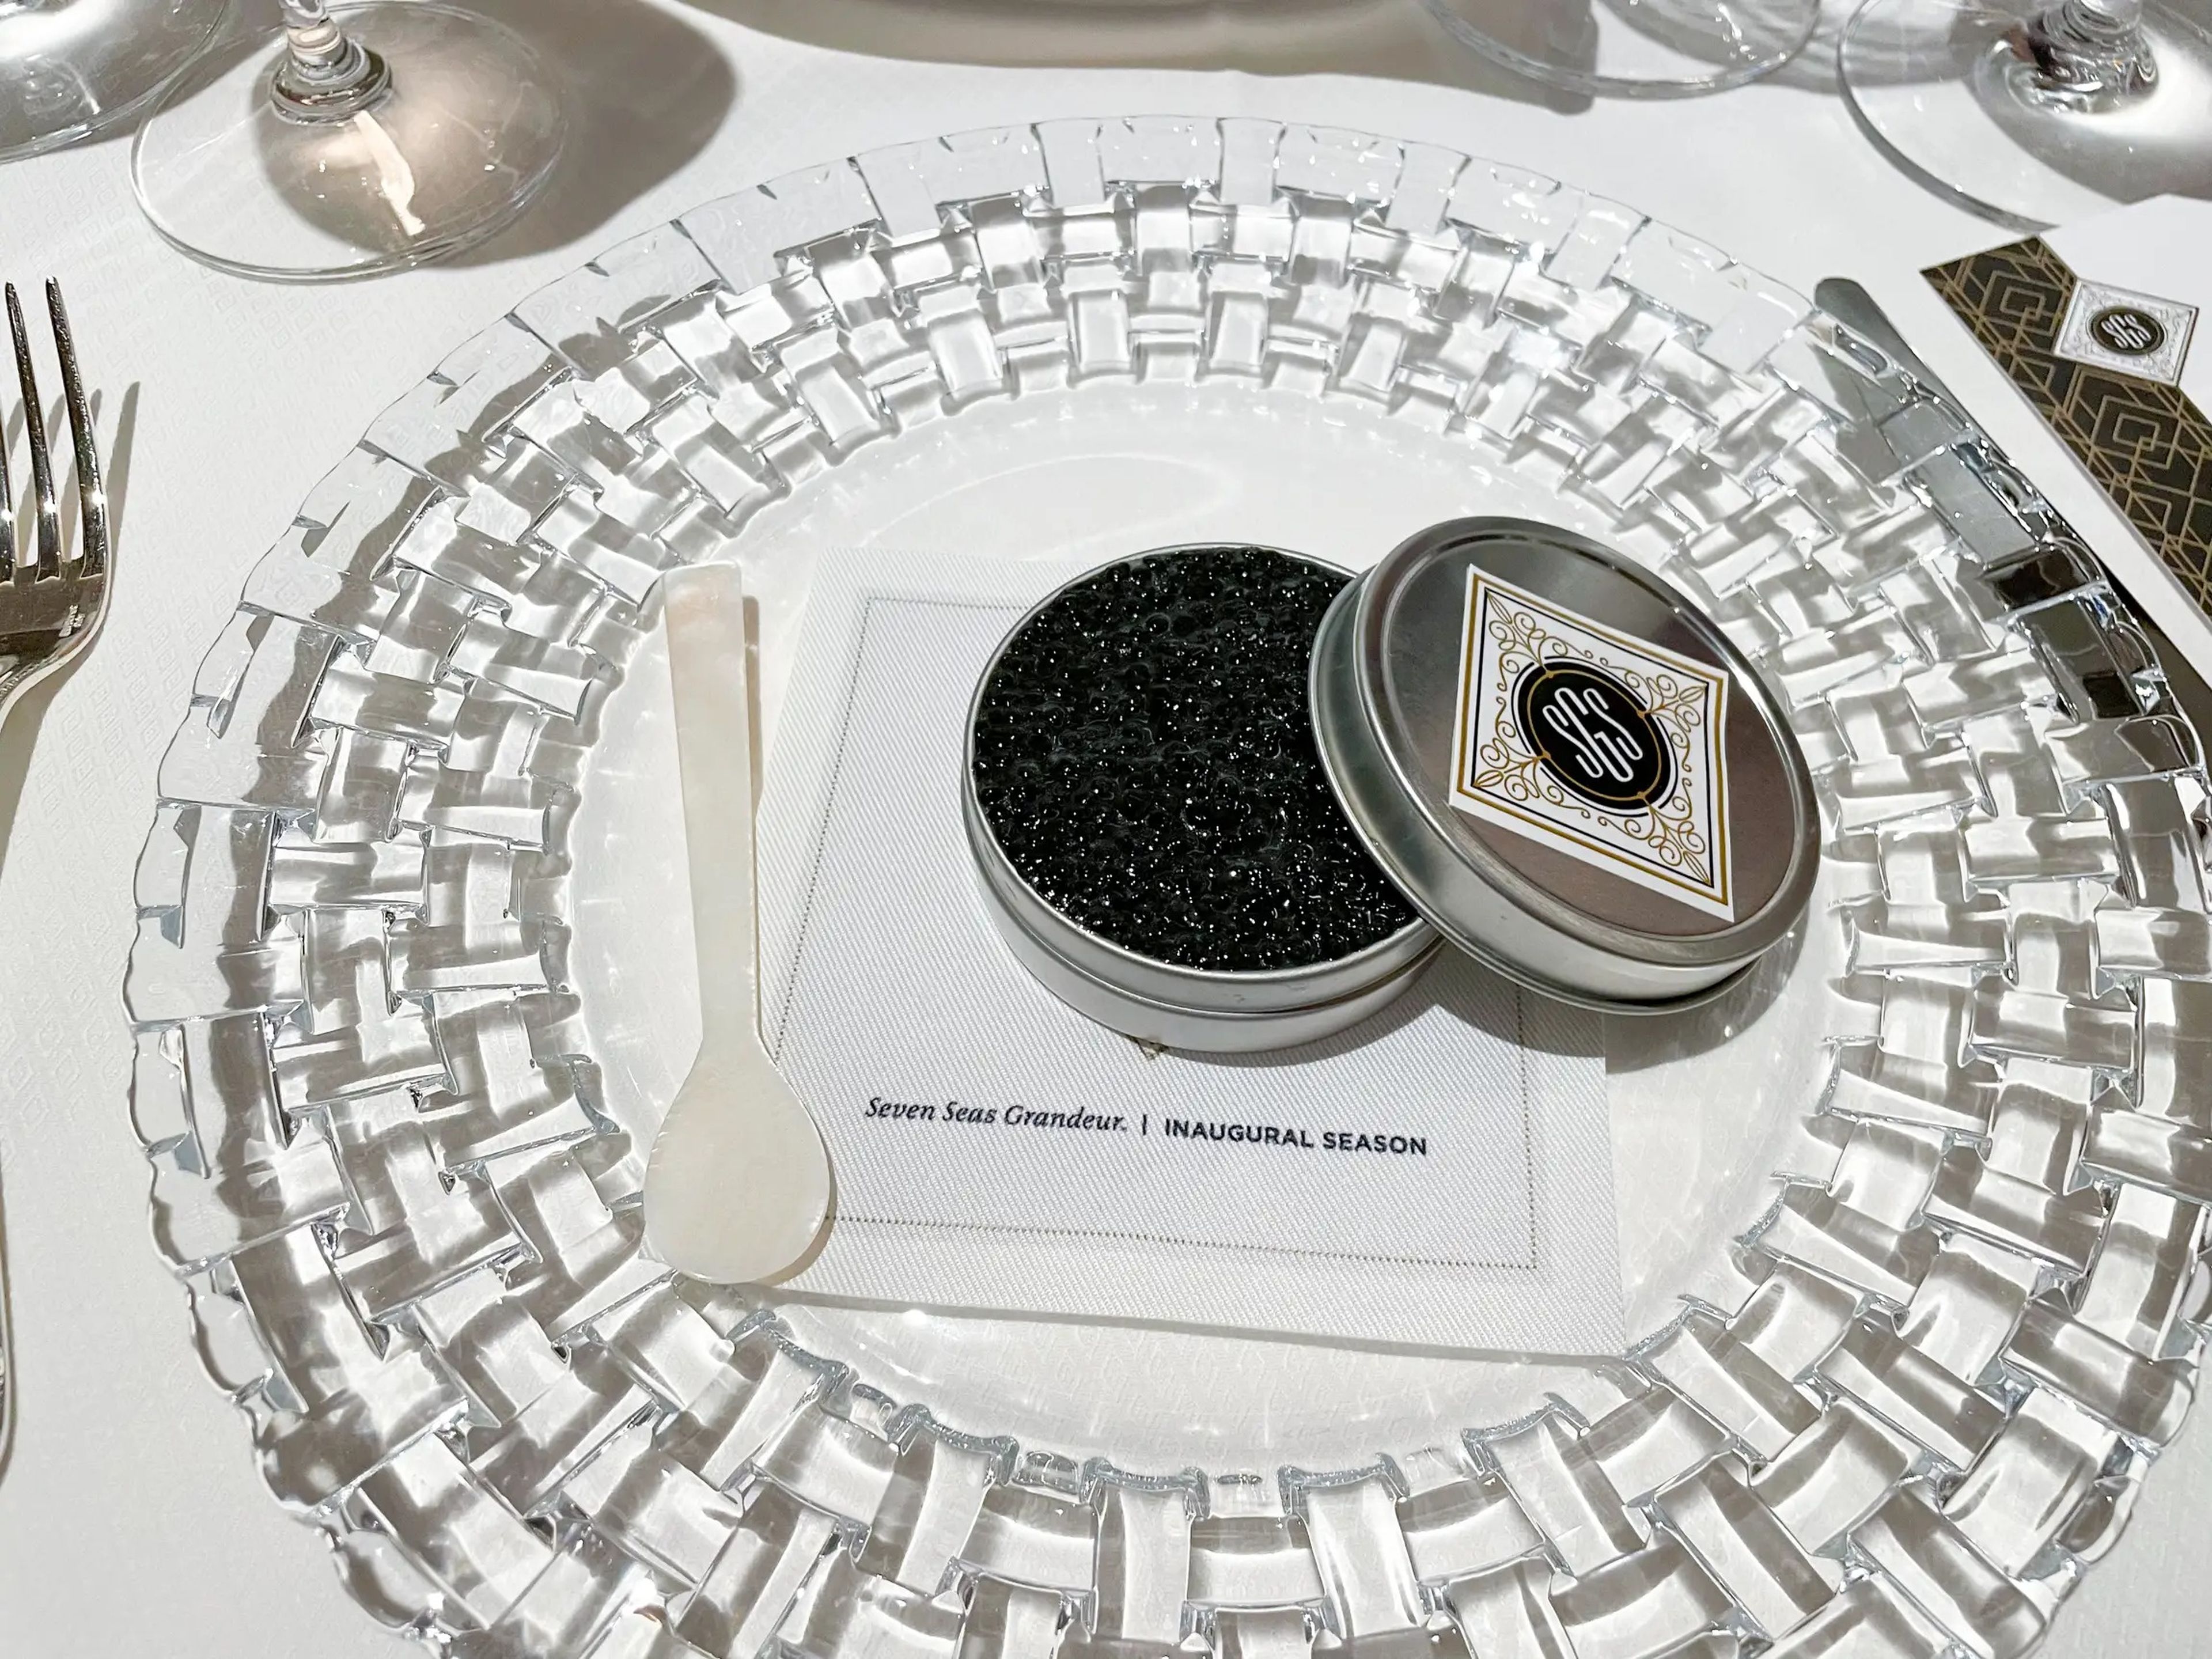 Los invitados a la cena de gala previa a la ceremonia de bautizo degustaron lujosos platos, como esta panna cotta de patata infusionada con trufa y cubierta con una fina capa de caviar de esturión blanco.